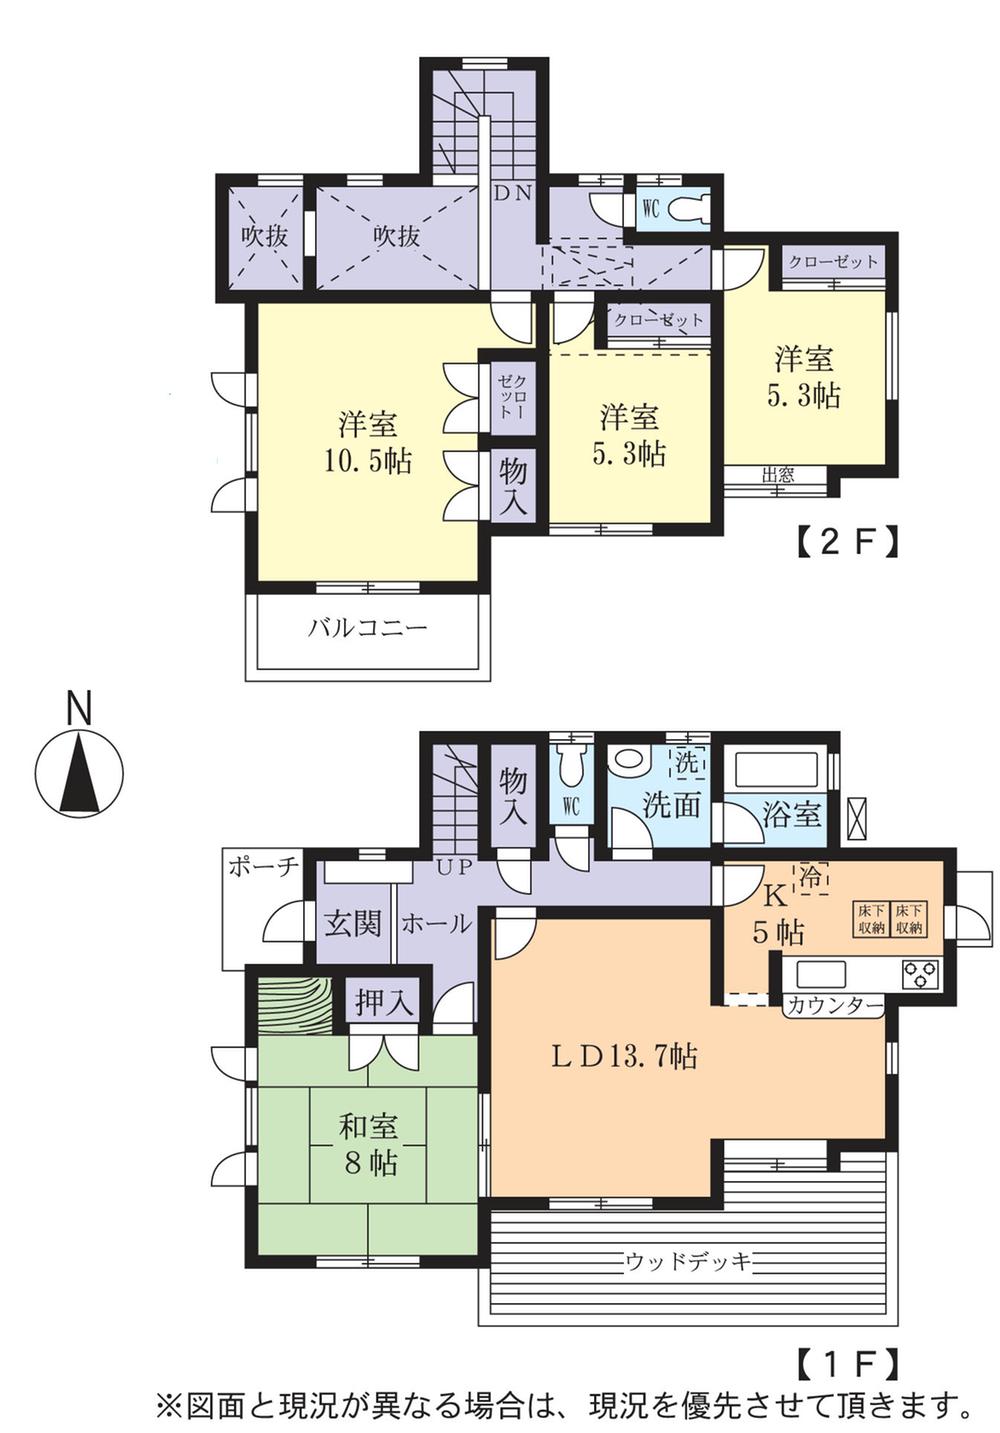 Floor plan. 14.5 million yen, 4LDK, Land area 220.87 sq m , Building area 117.82 sq m